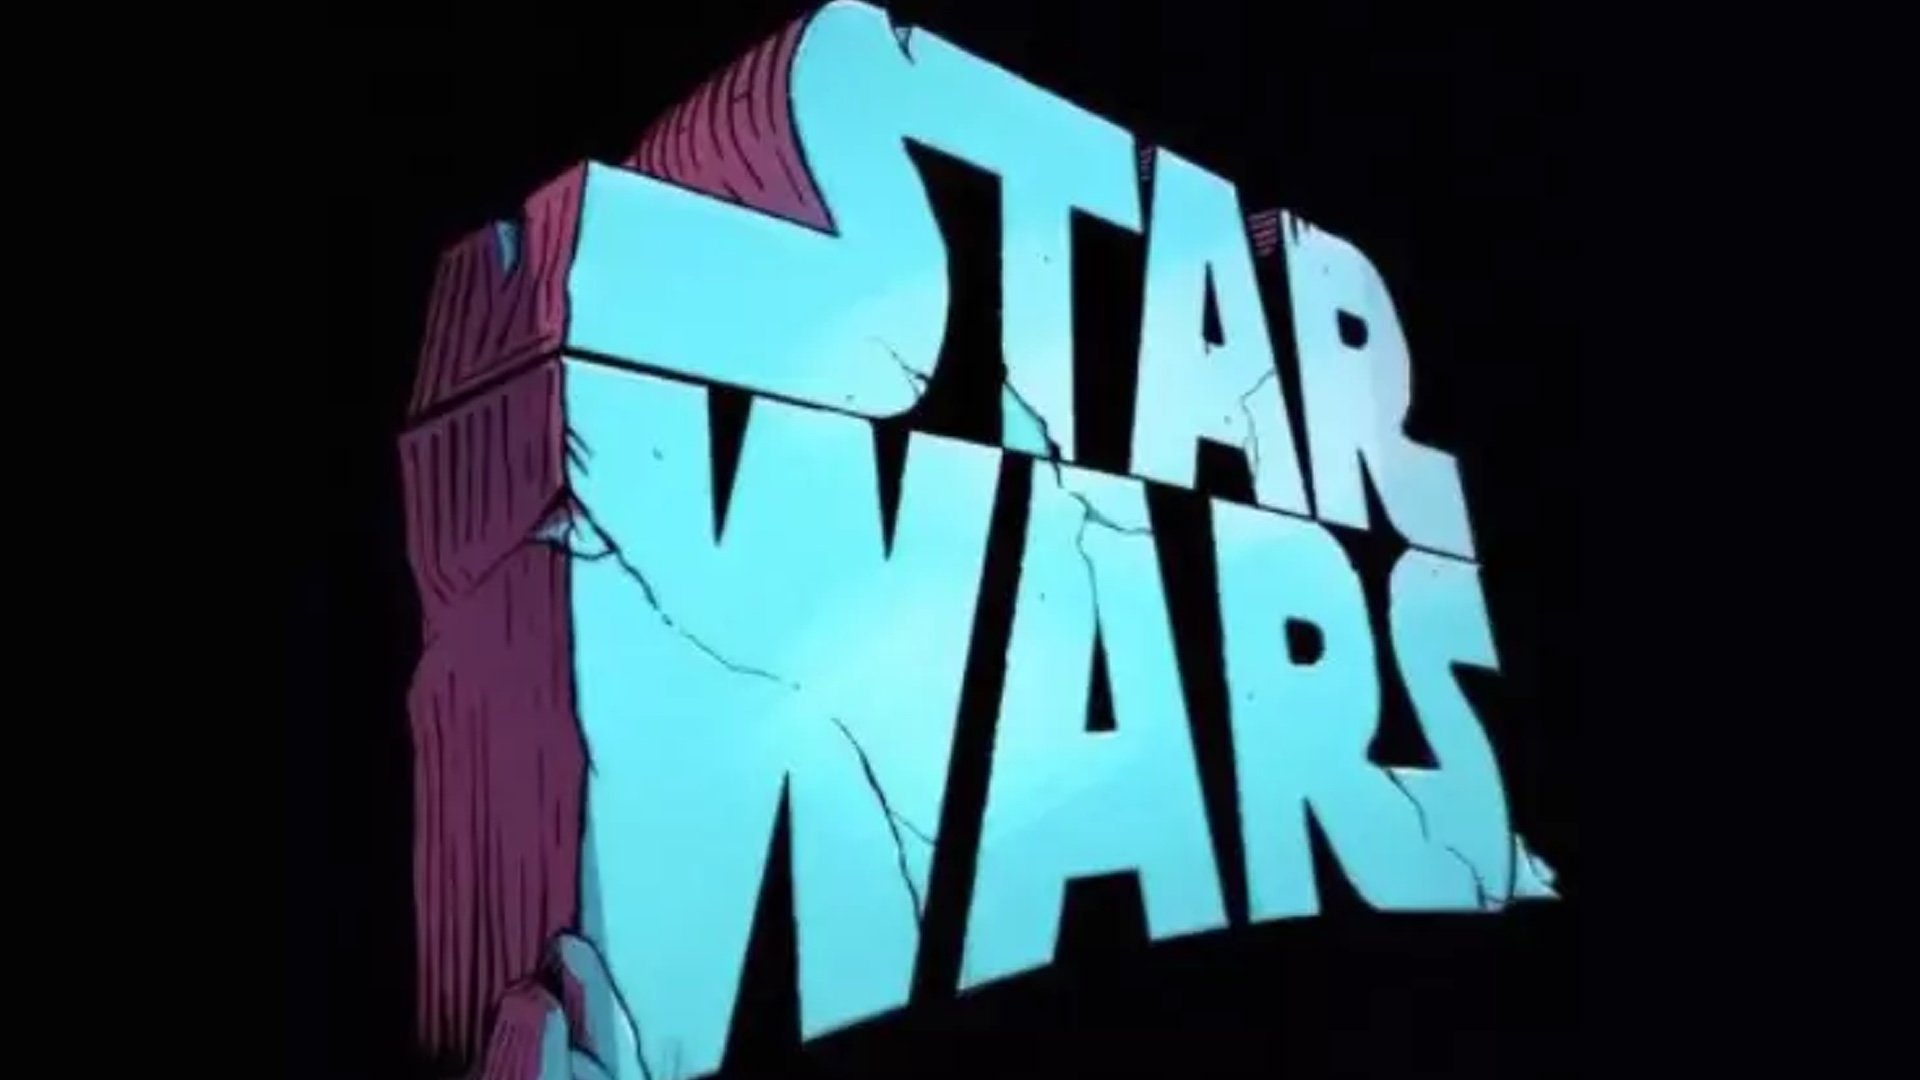 Film Star Wars di Taika Waititi, le anticipazioni del progetto